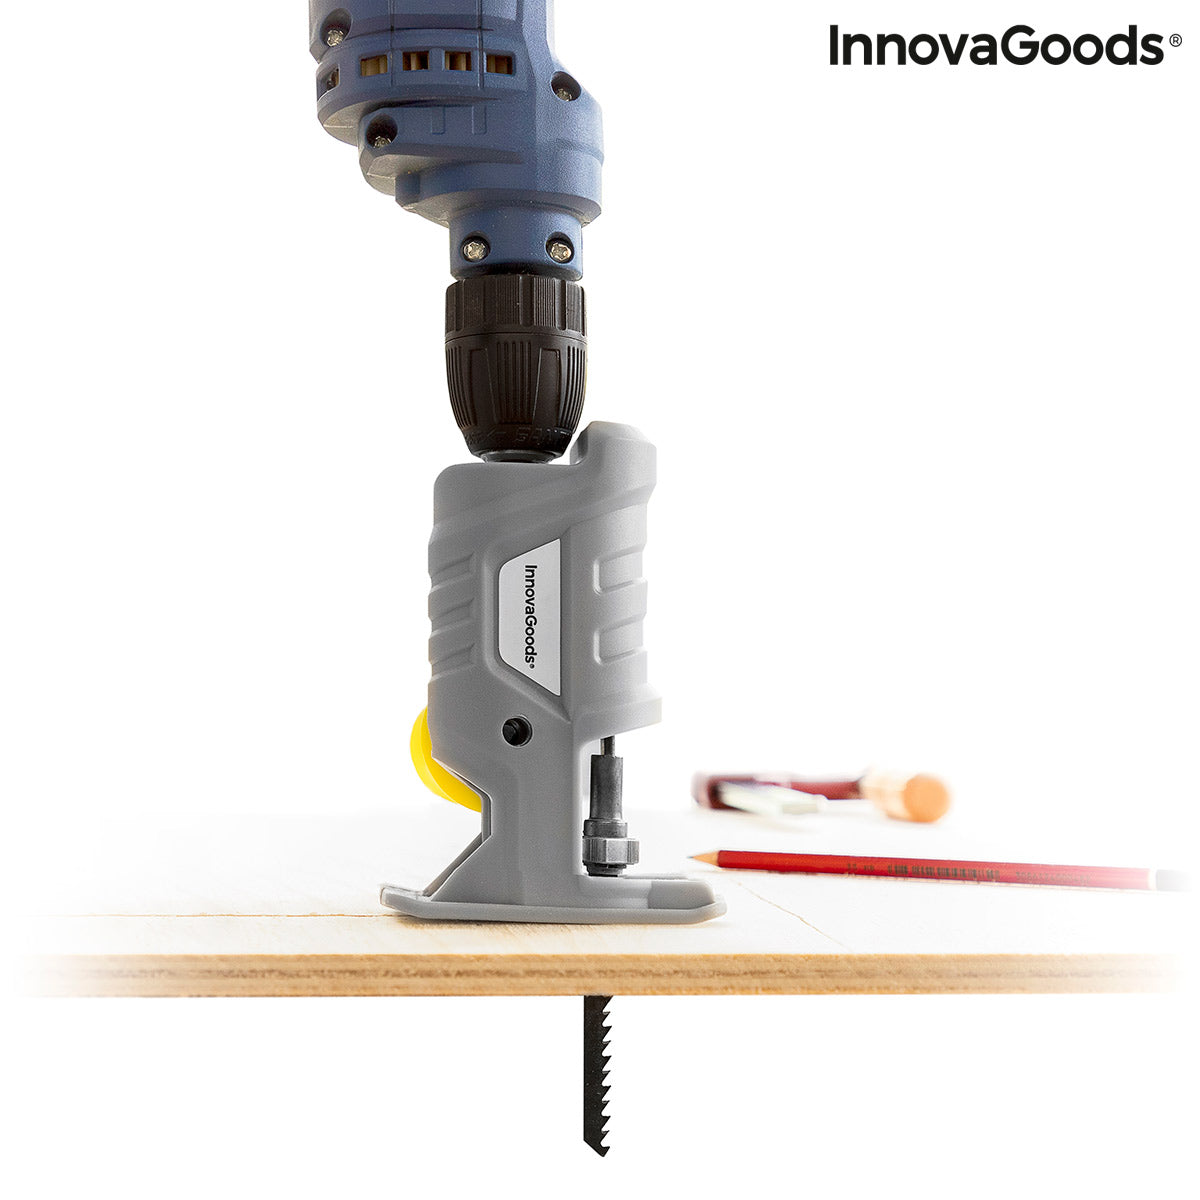 InnovaGoods® Adaptateur de scie sauteuse pour perceuse Jrill, transforme la perceuse en scie sauteuse, avec un design d'adaptate